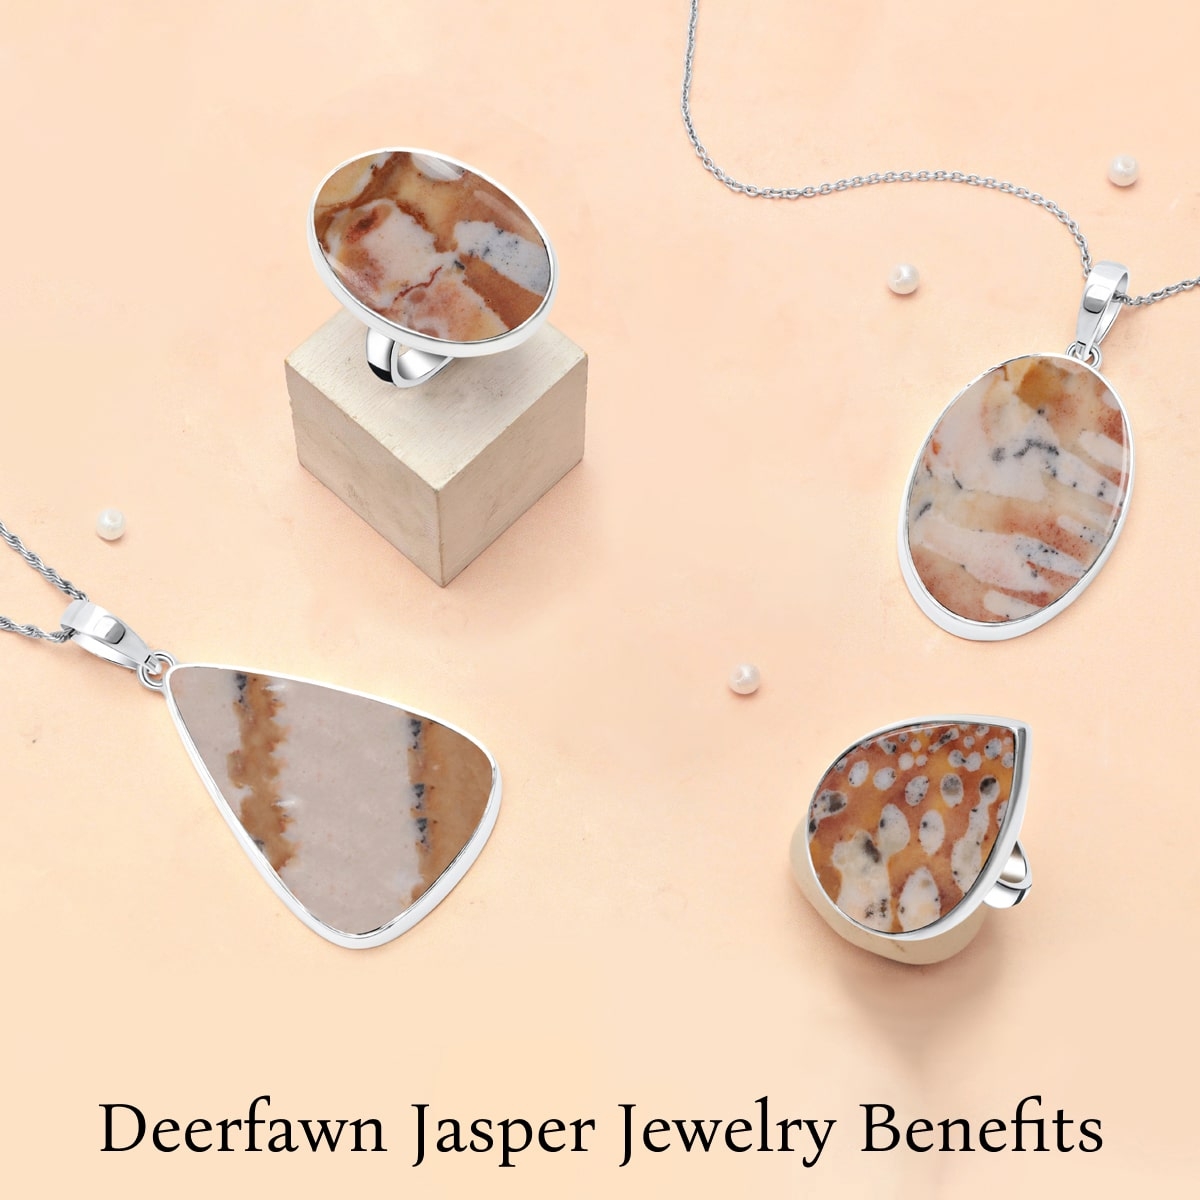 Benefits of Wearing Deerfawn Jasper Jewelry